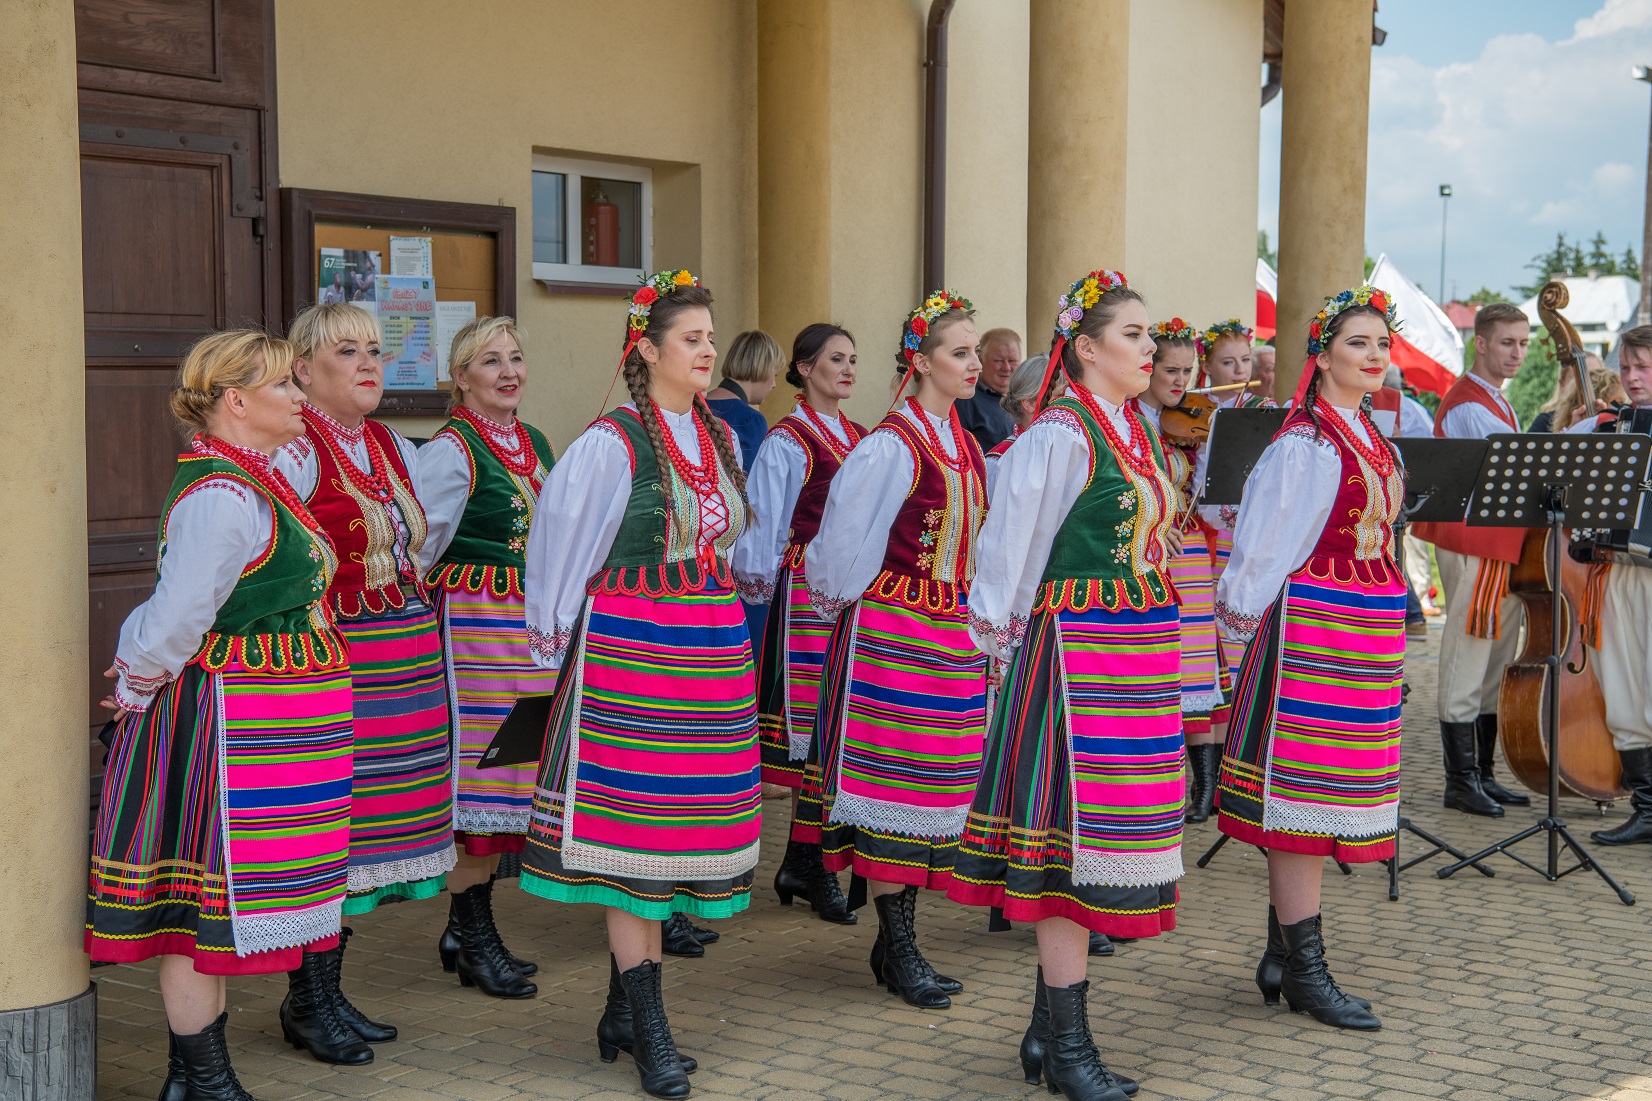 Zespół Narwianie podczas koncertu w Bielsku Podlaskim. Grupa tańczących osób w barwnych, ludowych strojach